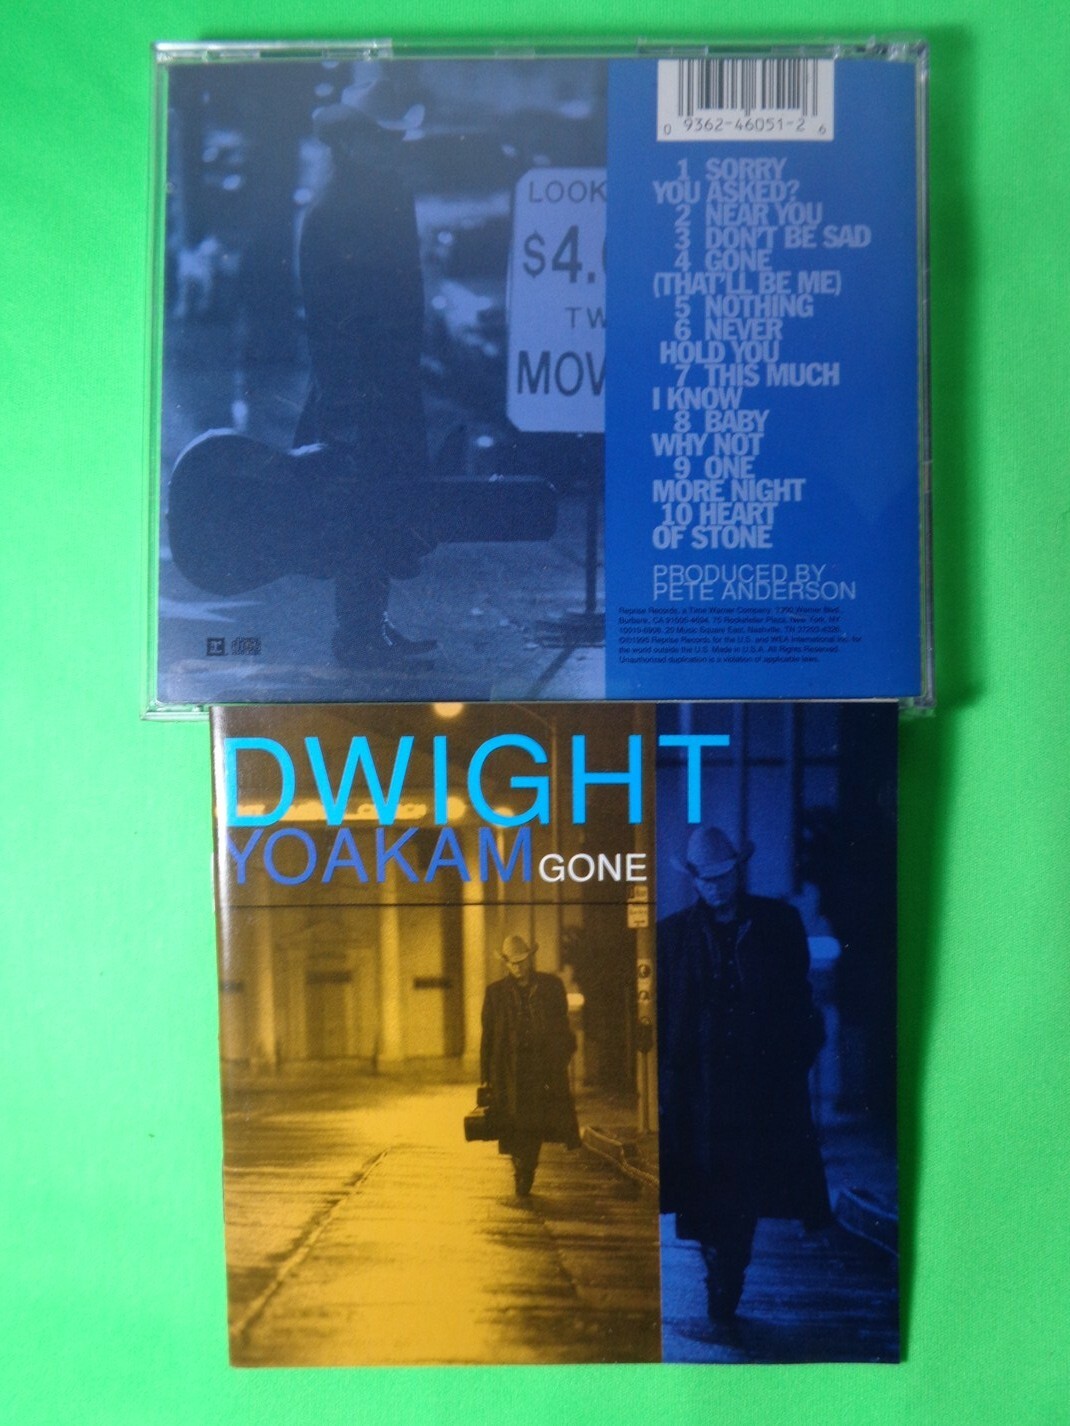 CD - Dwight Yoakam - Gone (USA)